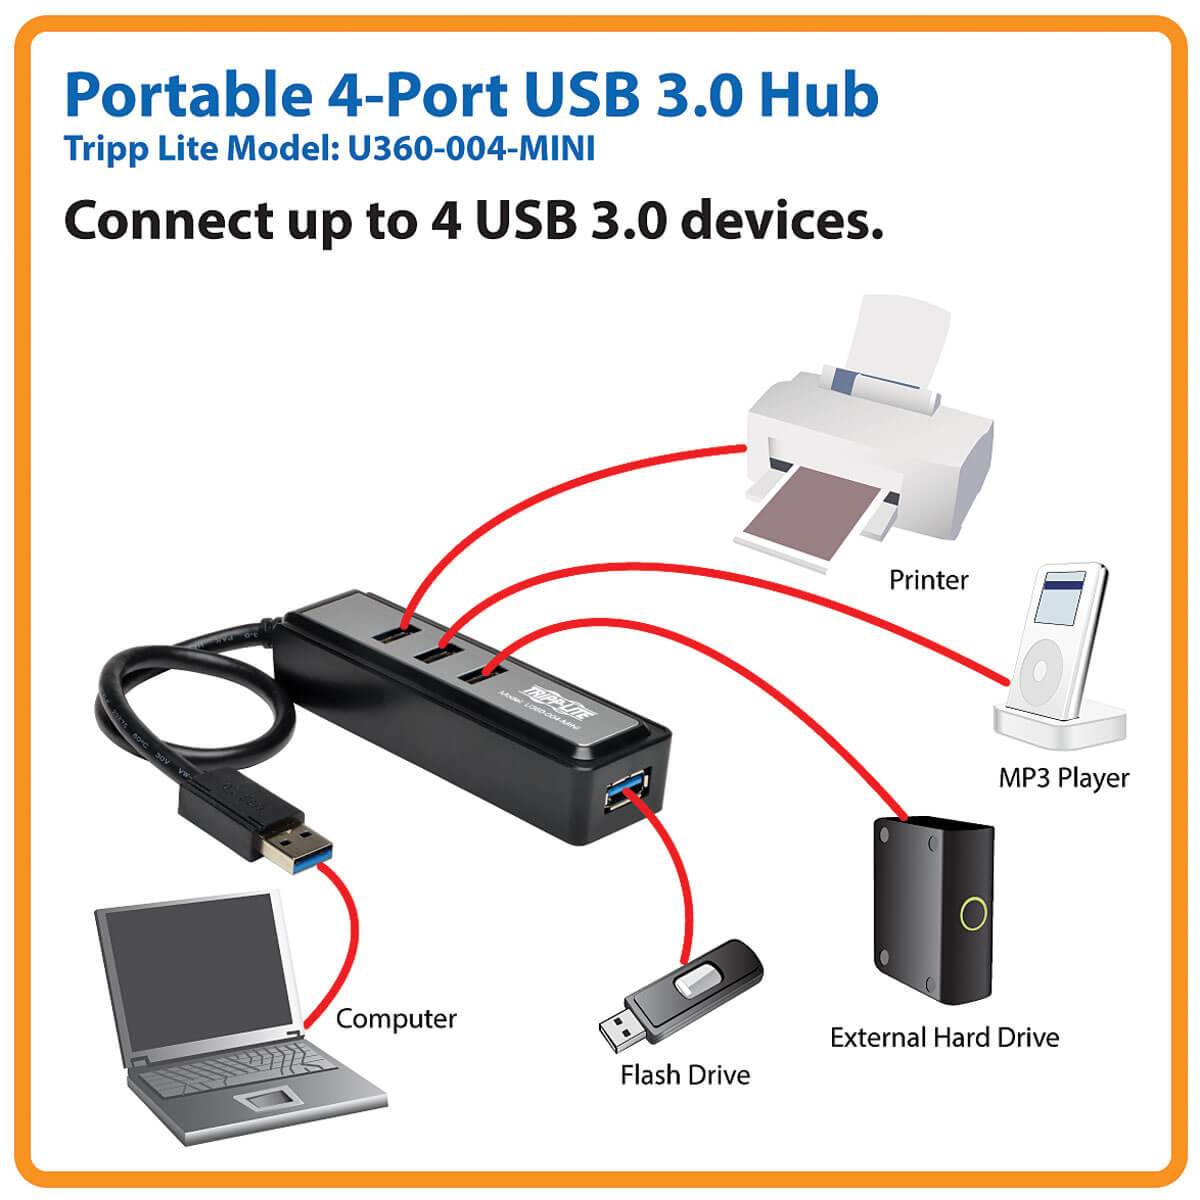 Rca Informatique - image du produit : 4-PORT USB 3.0 PORTABLE HUB